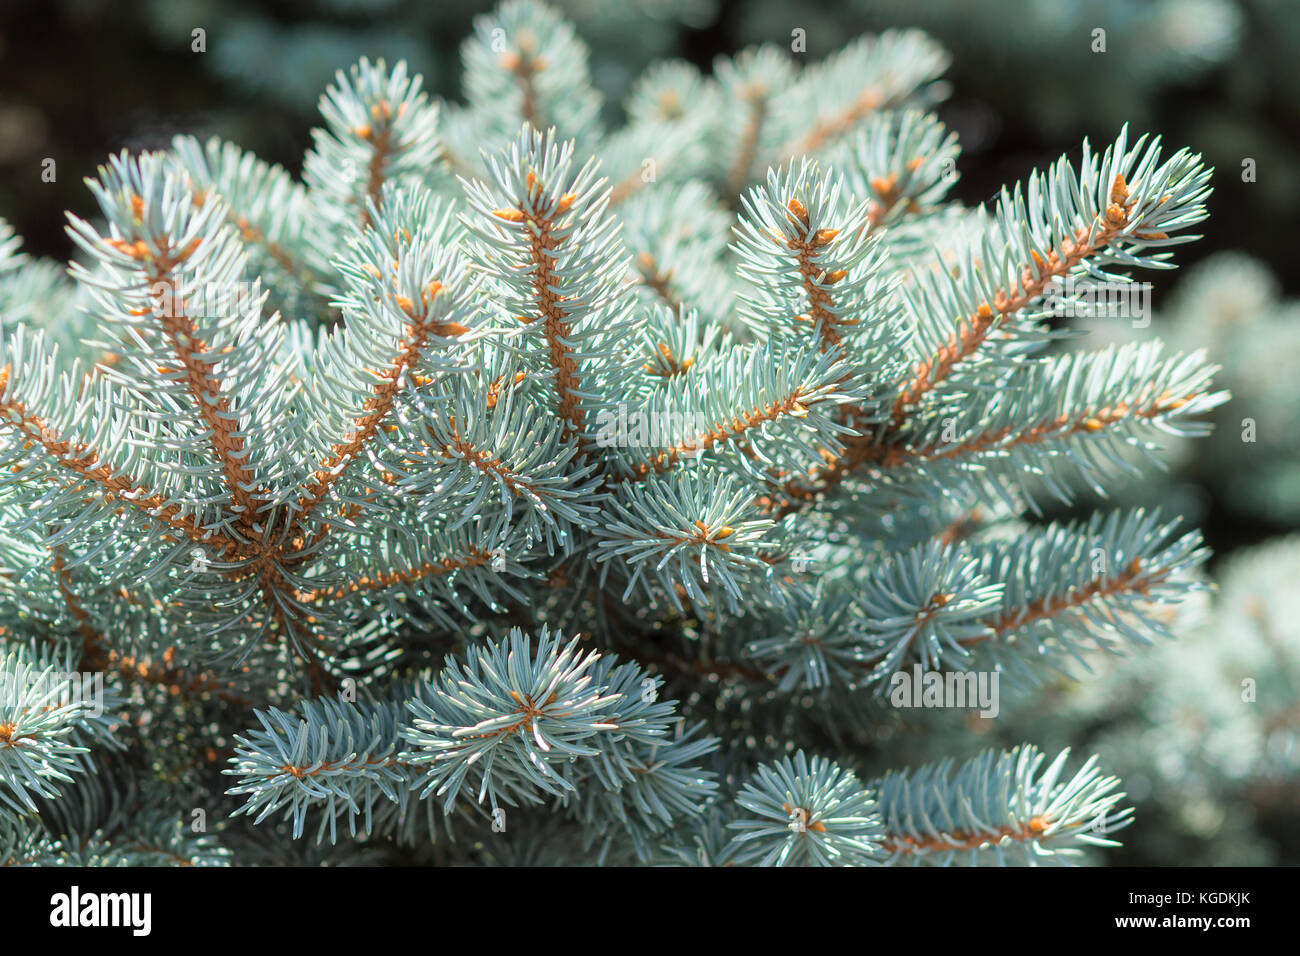 Branche de sapin bleu du Colorado Picea pungens ou avec des feuilles pareilles à des aiguilles. close-up stock photo. Banque D'Images